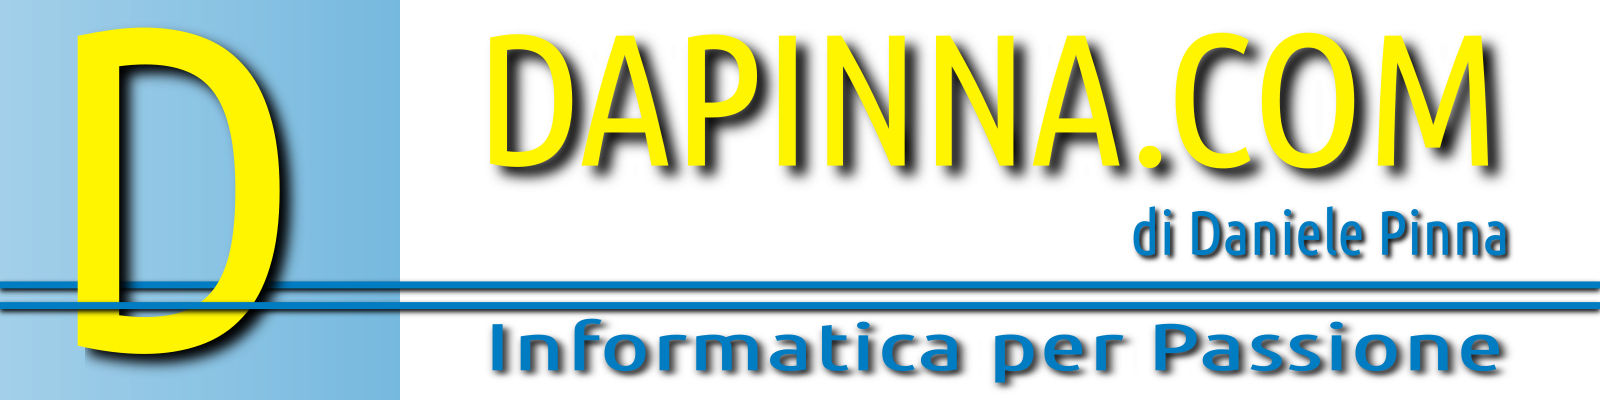 Logo DAPINNA.COM 2020 1600x400